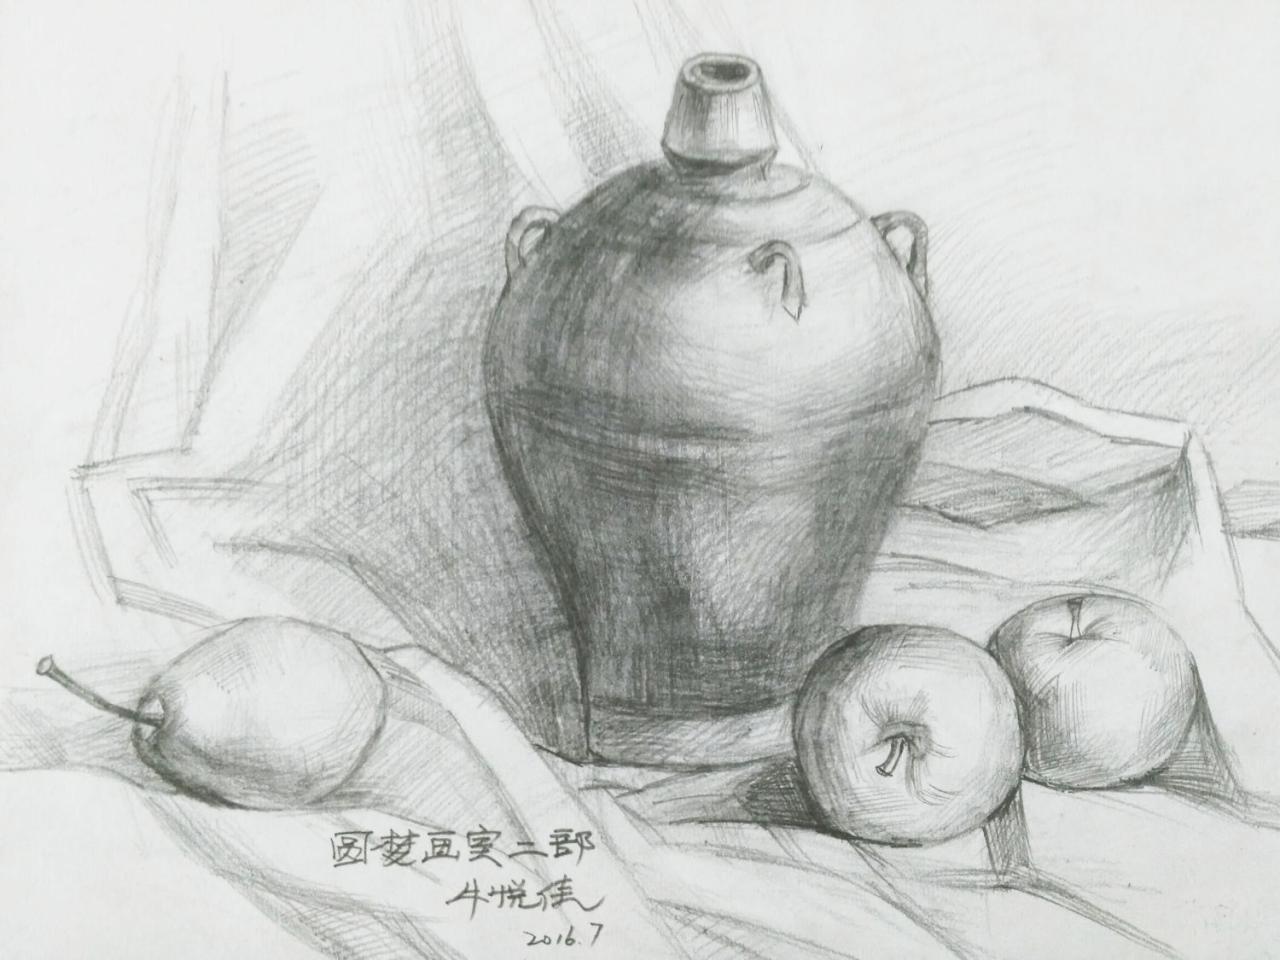 陶罐、苹果、梨 静物素描 牛悦佳画